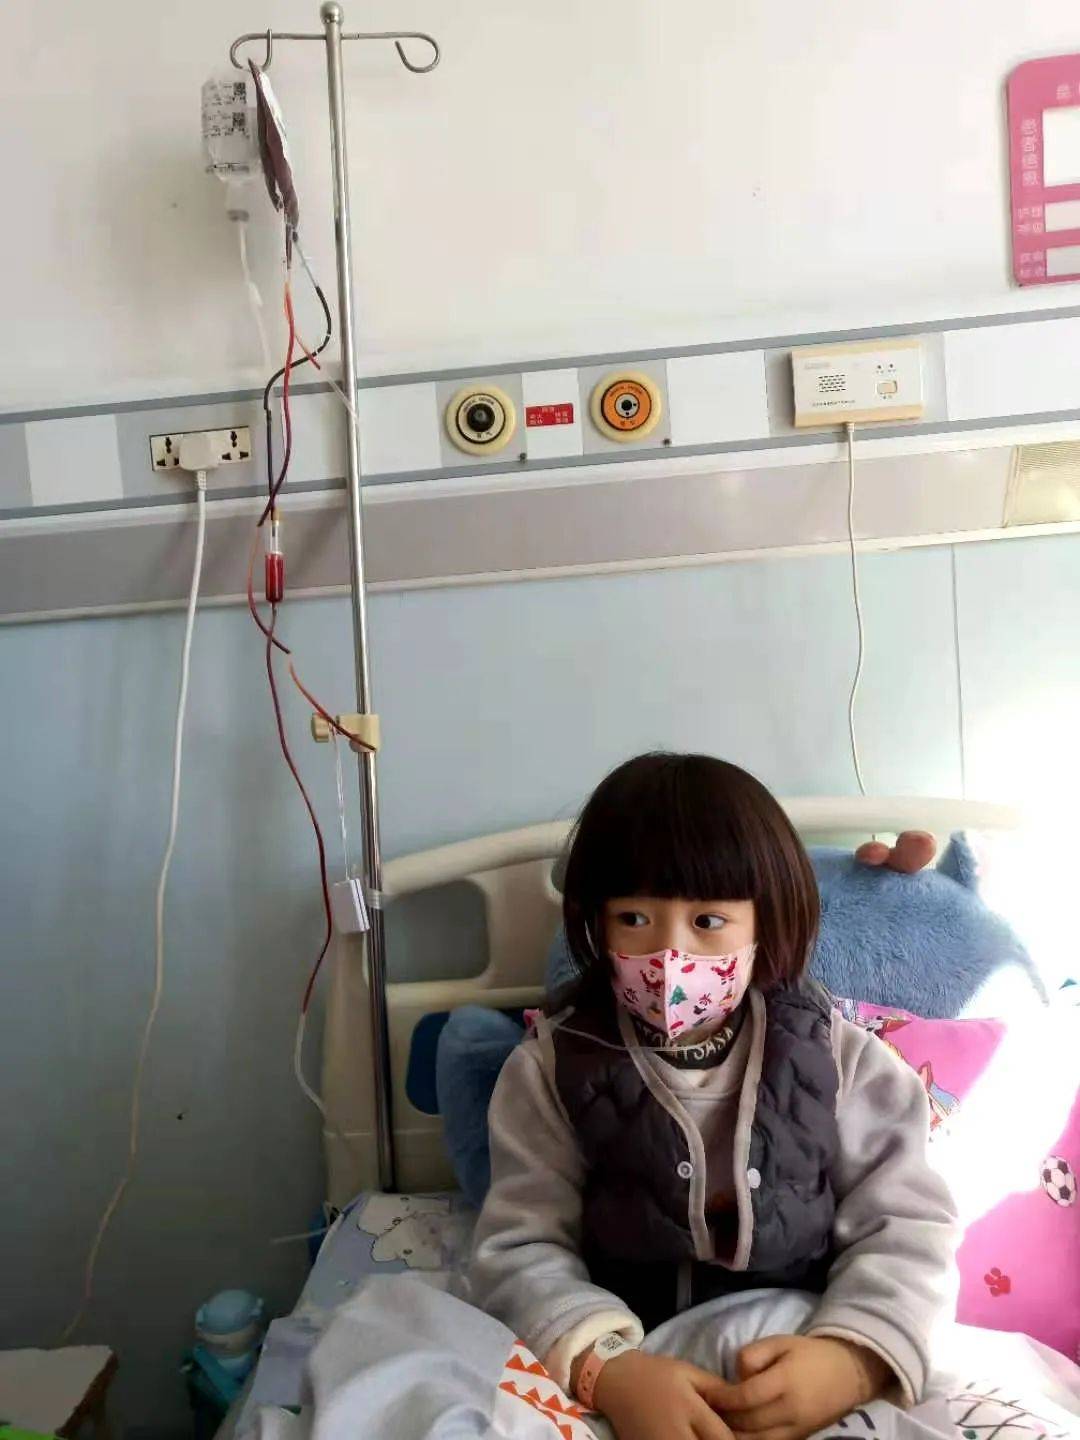 【求助】大理3岁女孩患急性白血病!父亲发求助信,望好心人帮助